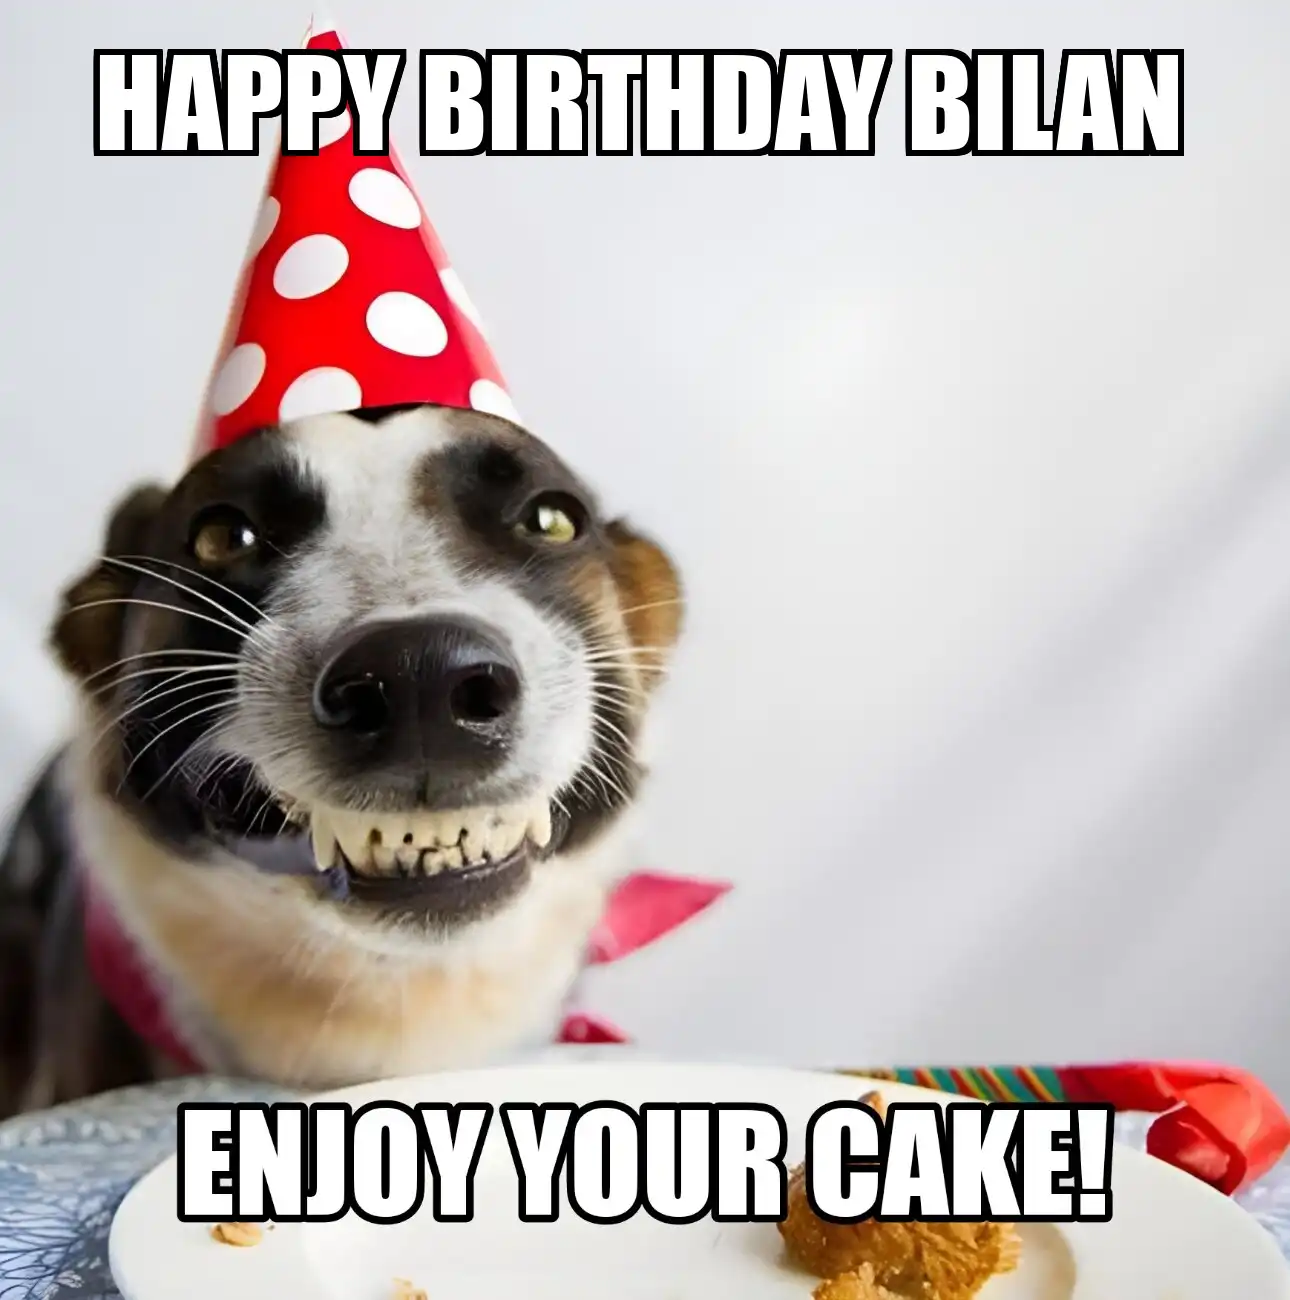 Happy Birthday Bilan Enjoy Your Cake Dog Meme